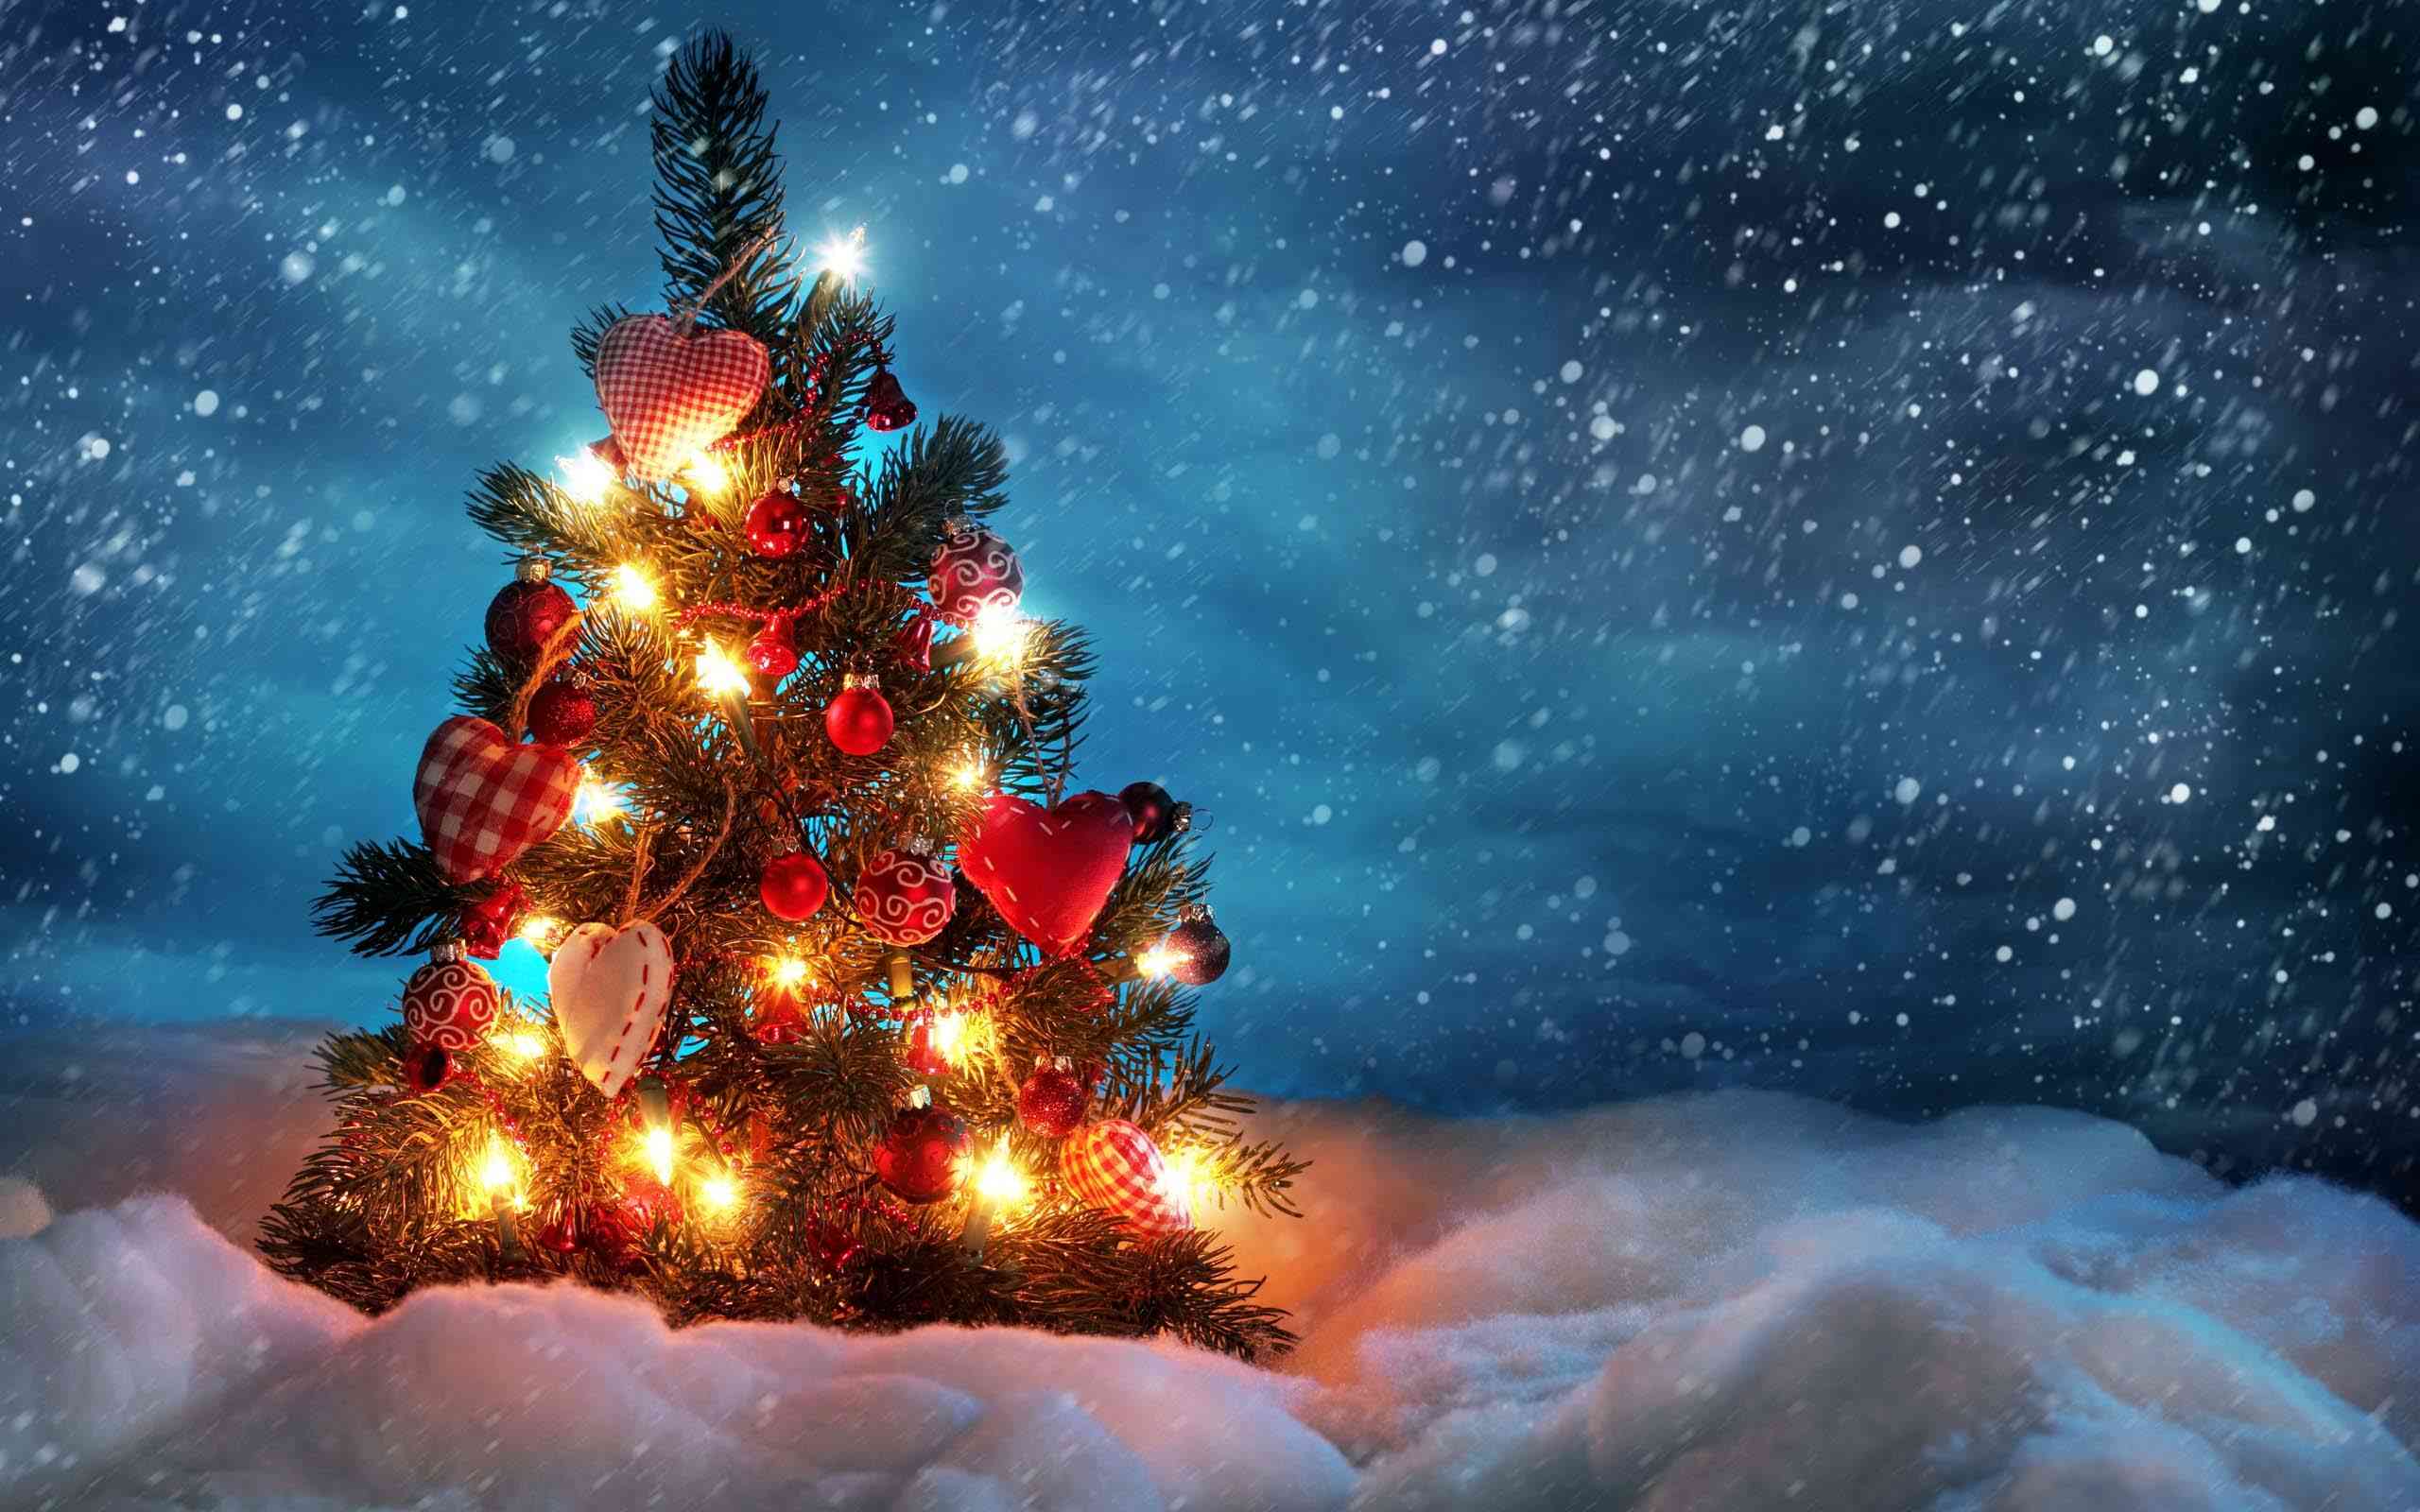 Tải bộ hình nền Merry Christmas cực đẹp cho mùa Noel  AnonyViet